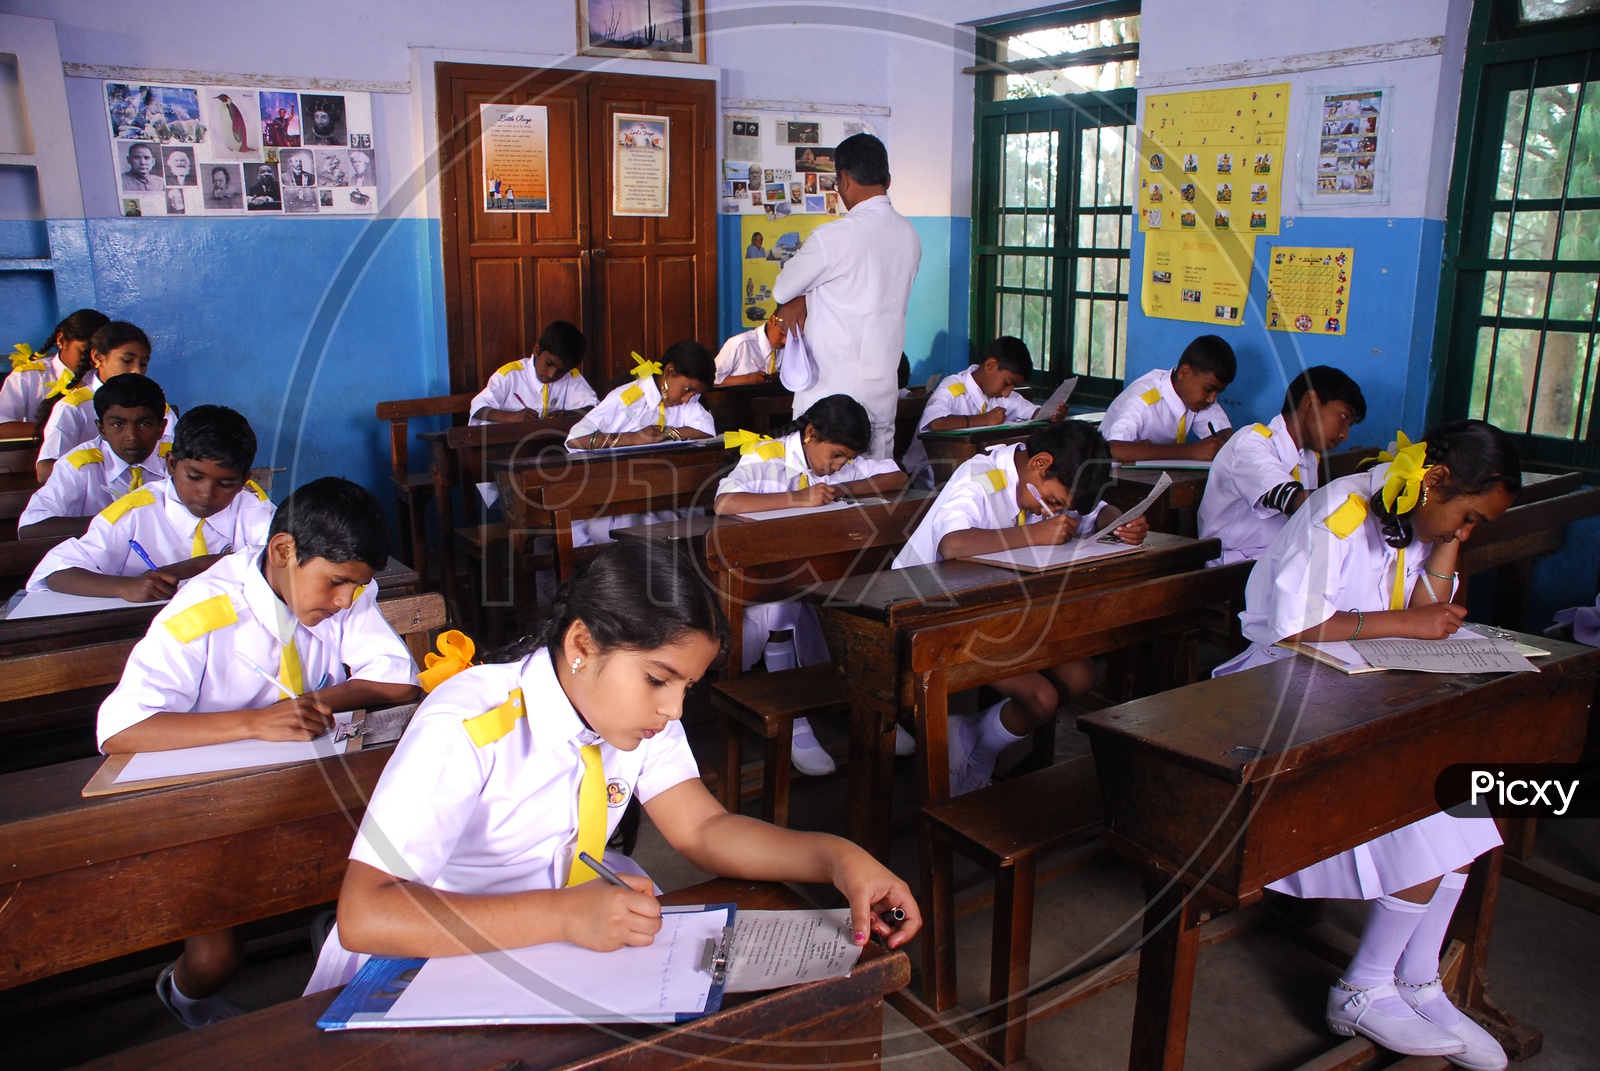 School kids during an exam